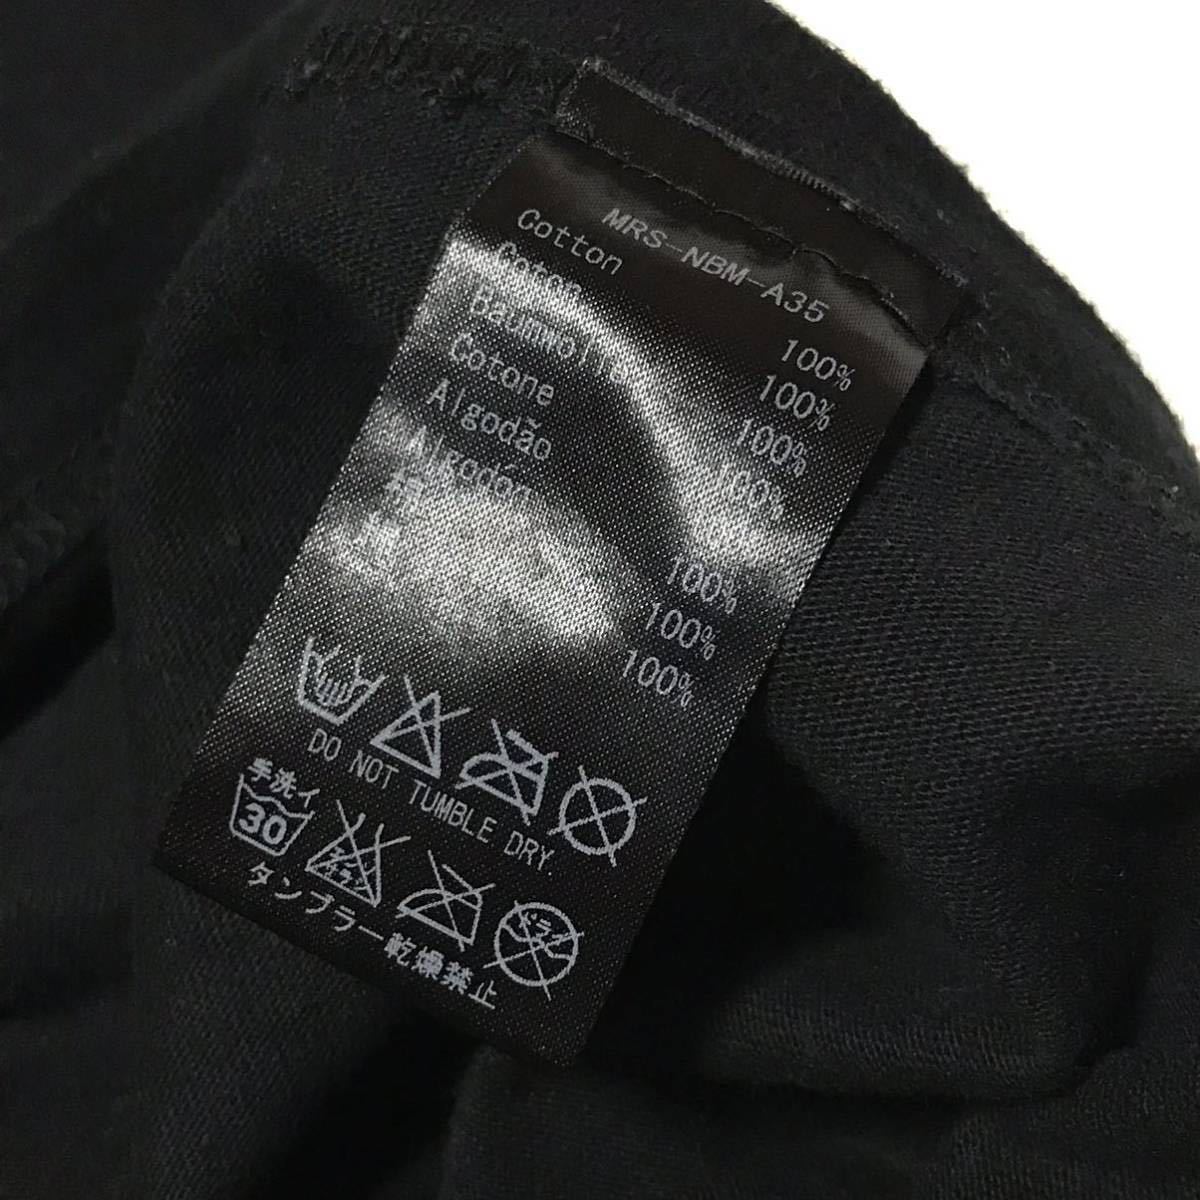 【NEXUSⅦ】ネクサス7 タイガーロゴ グラフィック Tシャツ メンズ48/L ブラック 黒 コットン 半袖Tee トラ 両面プリント USED 古着 正規品の画像7